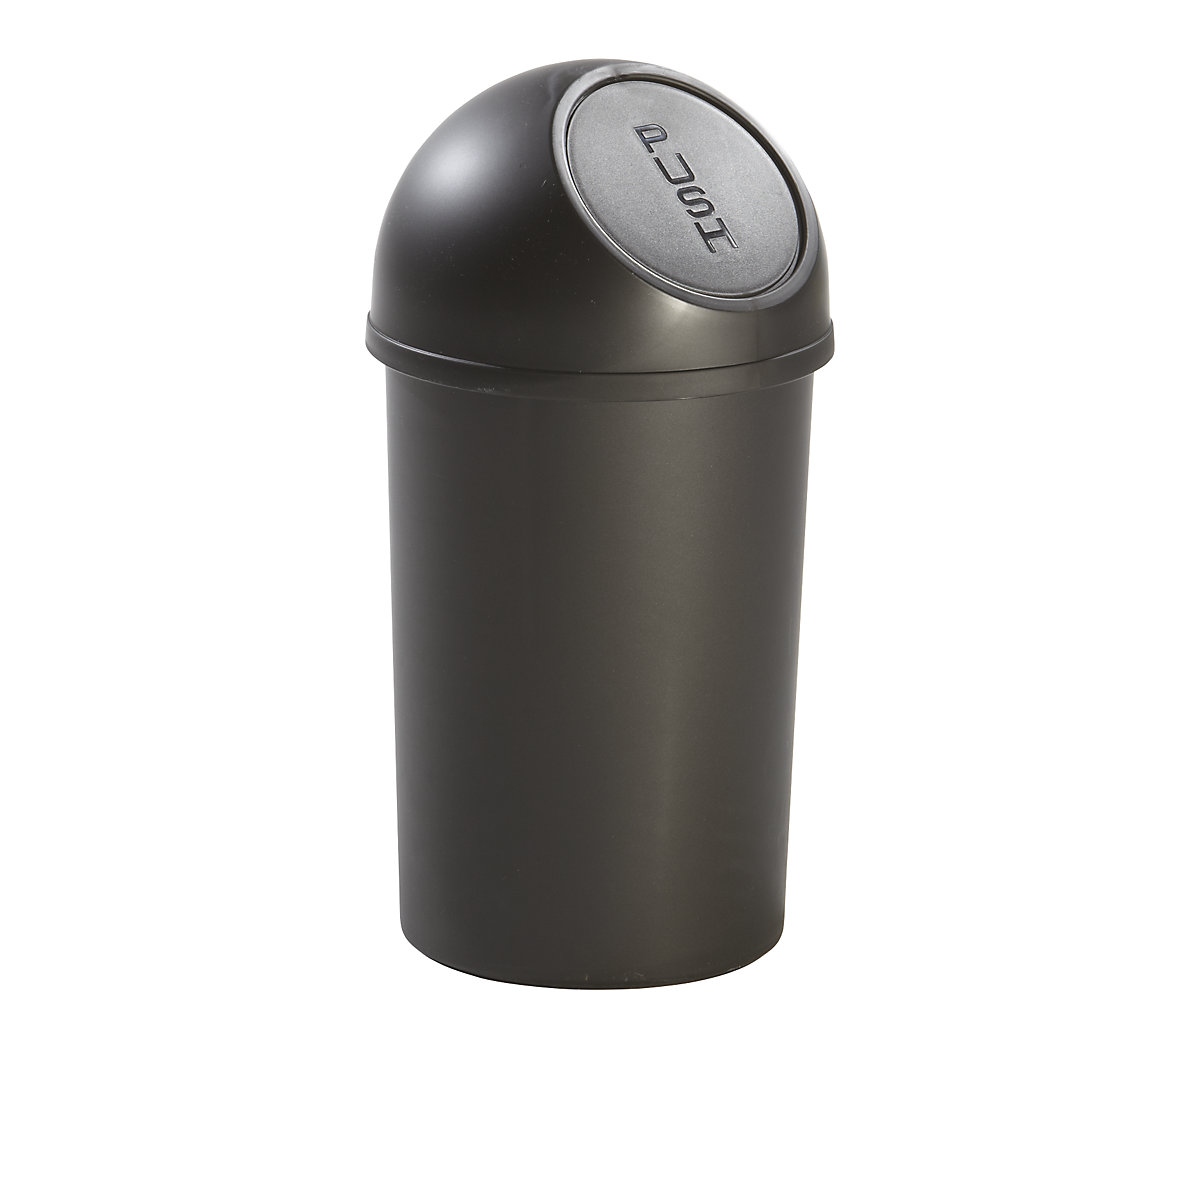 Plastični spremnik za otpad s otvaranjem na pritisak – helit, volumen 13 l, VxØ 490 x 252 mm, u crnoj boji, pak. 6 kom.-6